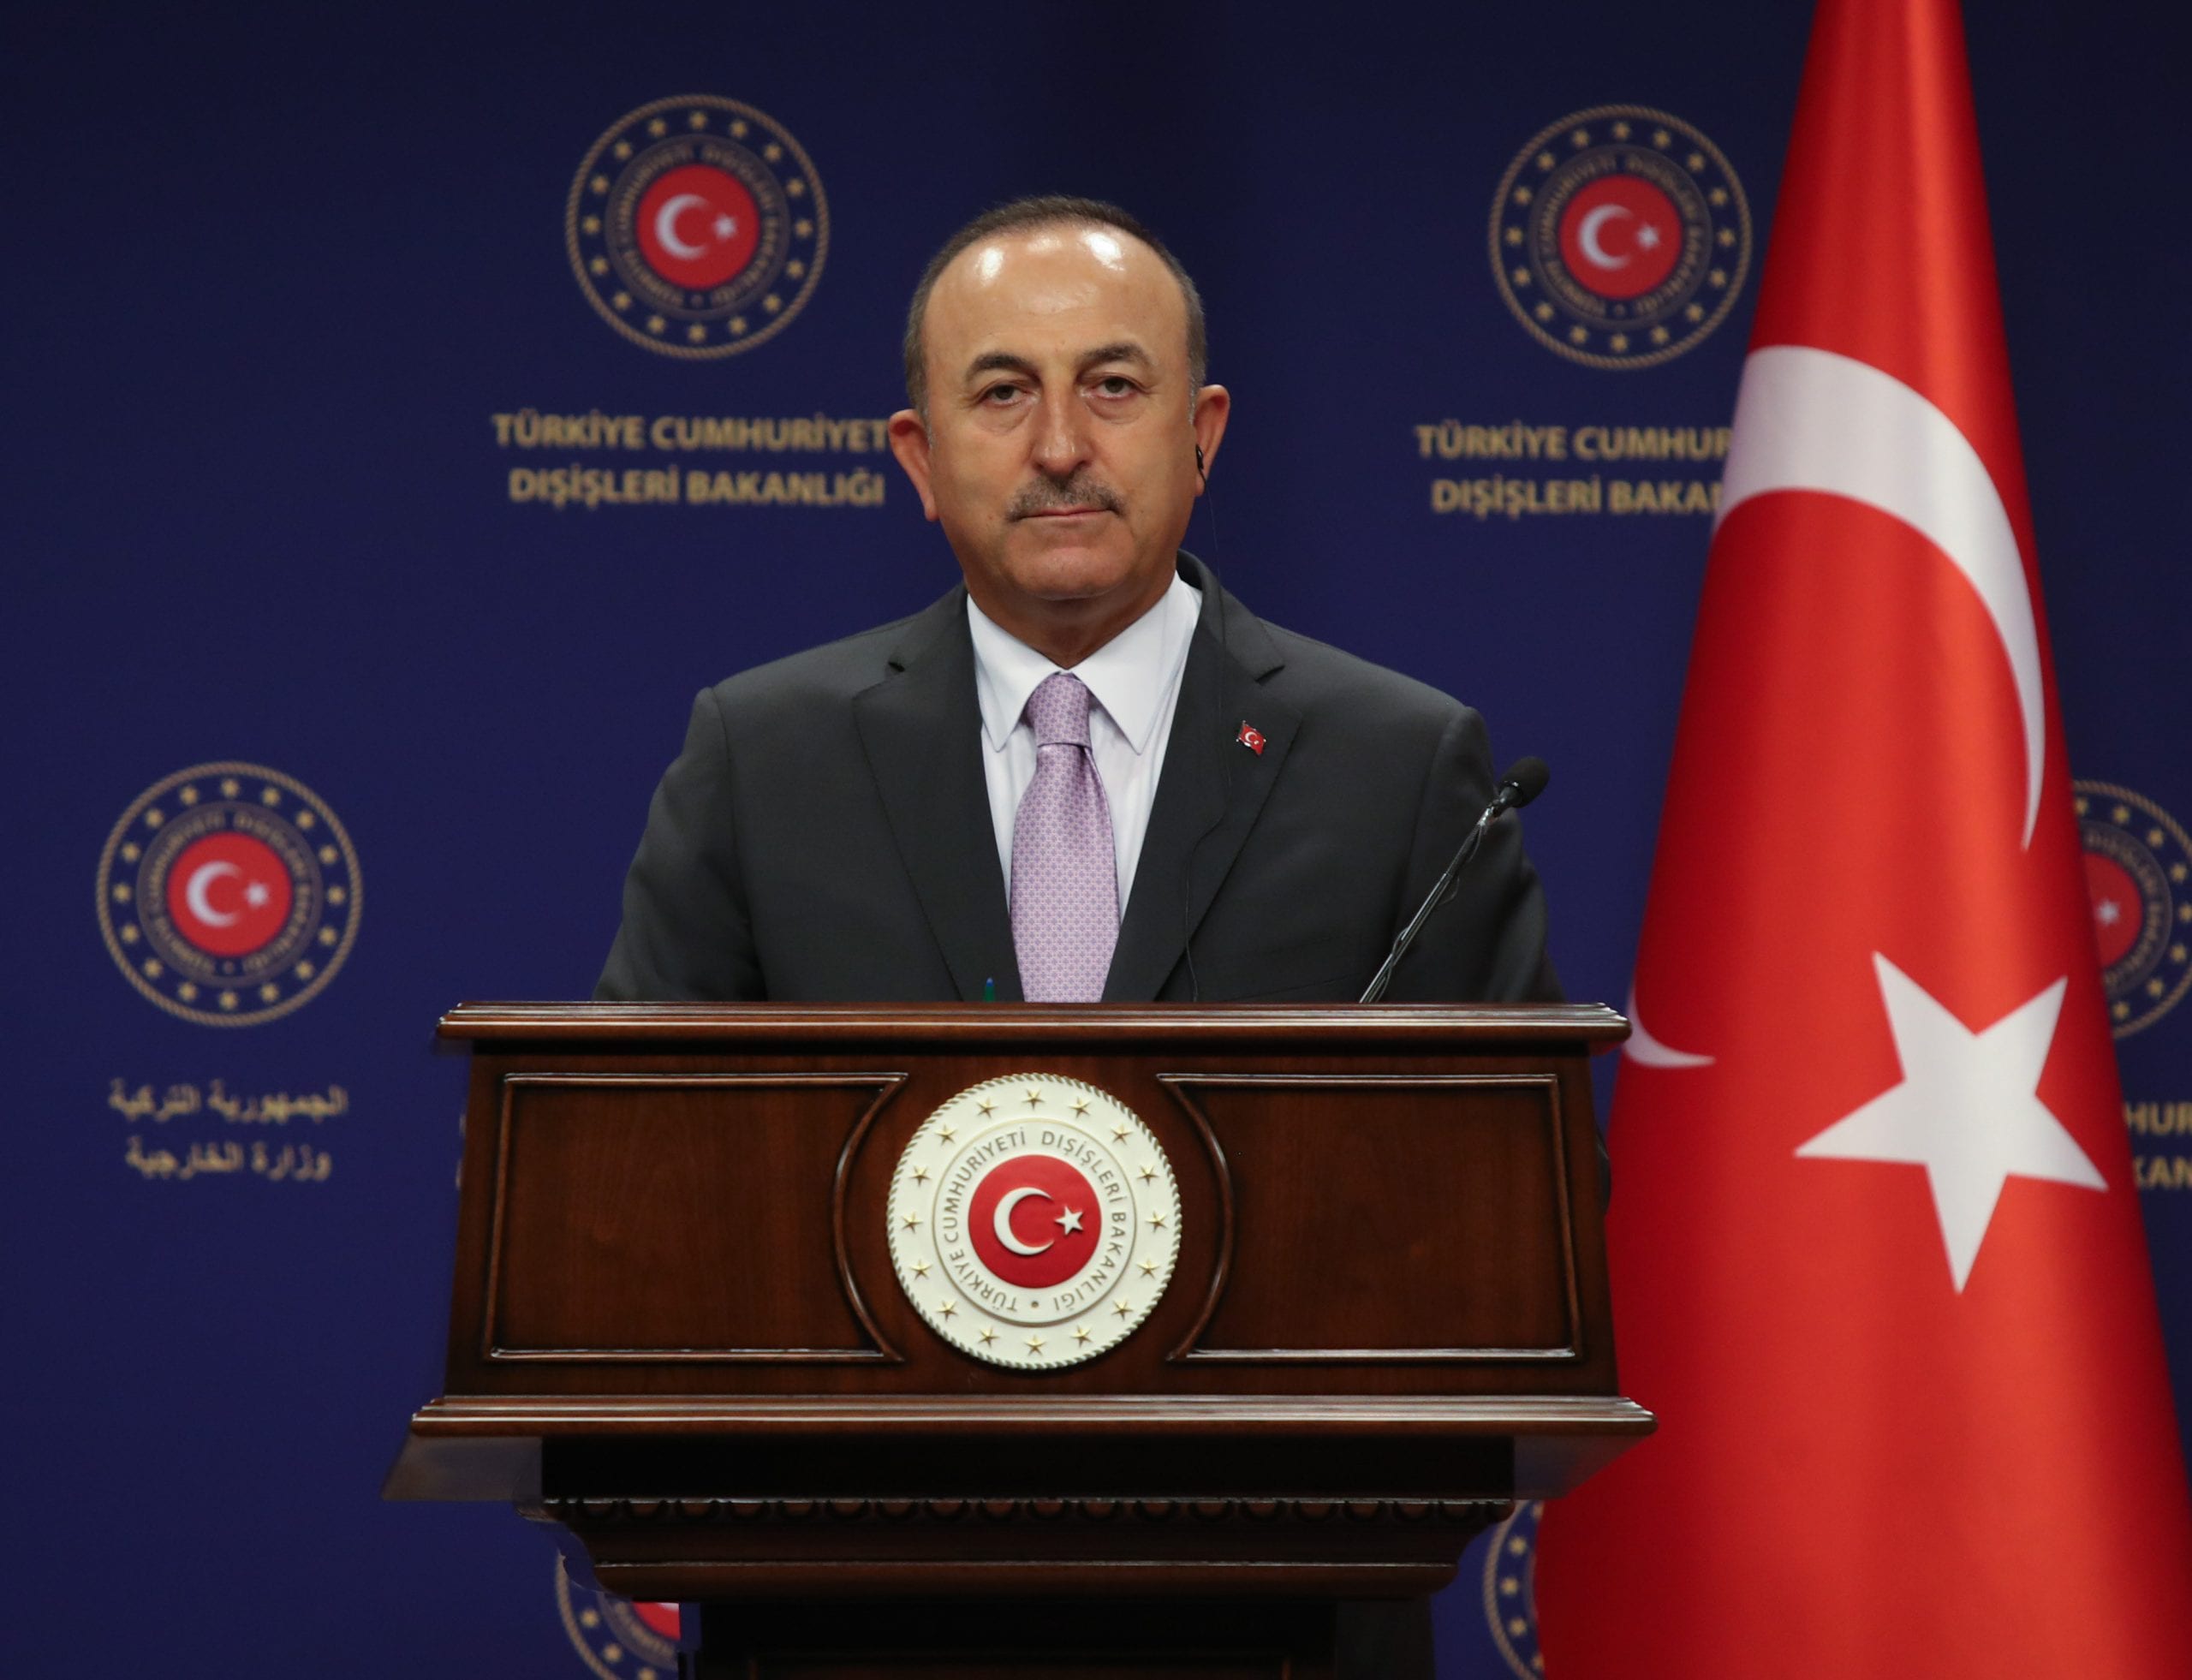 Вебинар на уровне министров, организованный в Турции, отложен